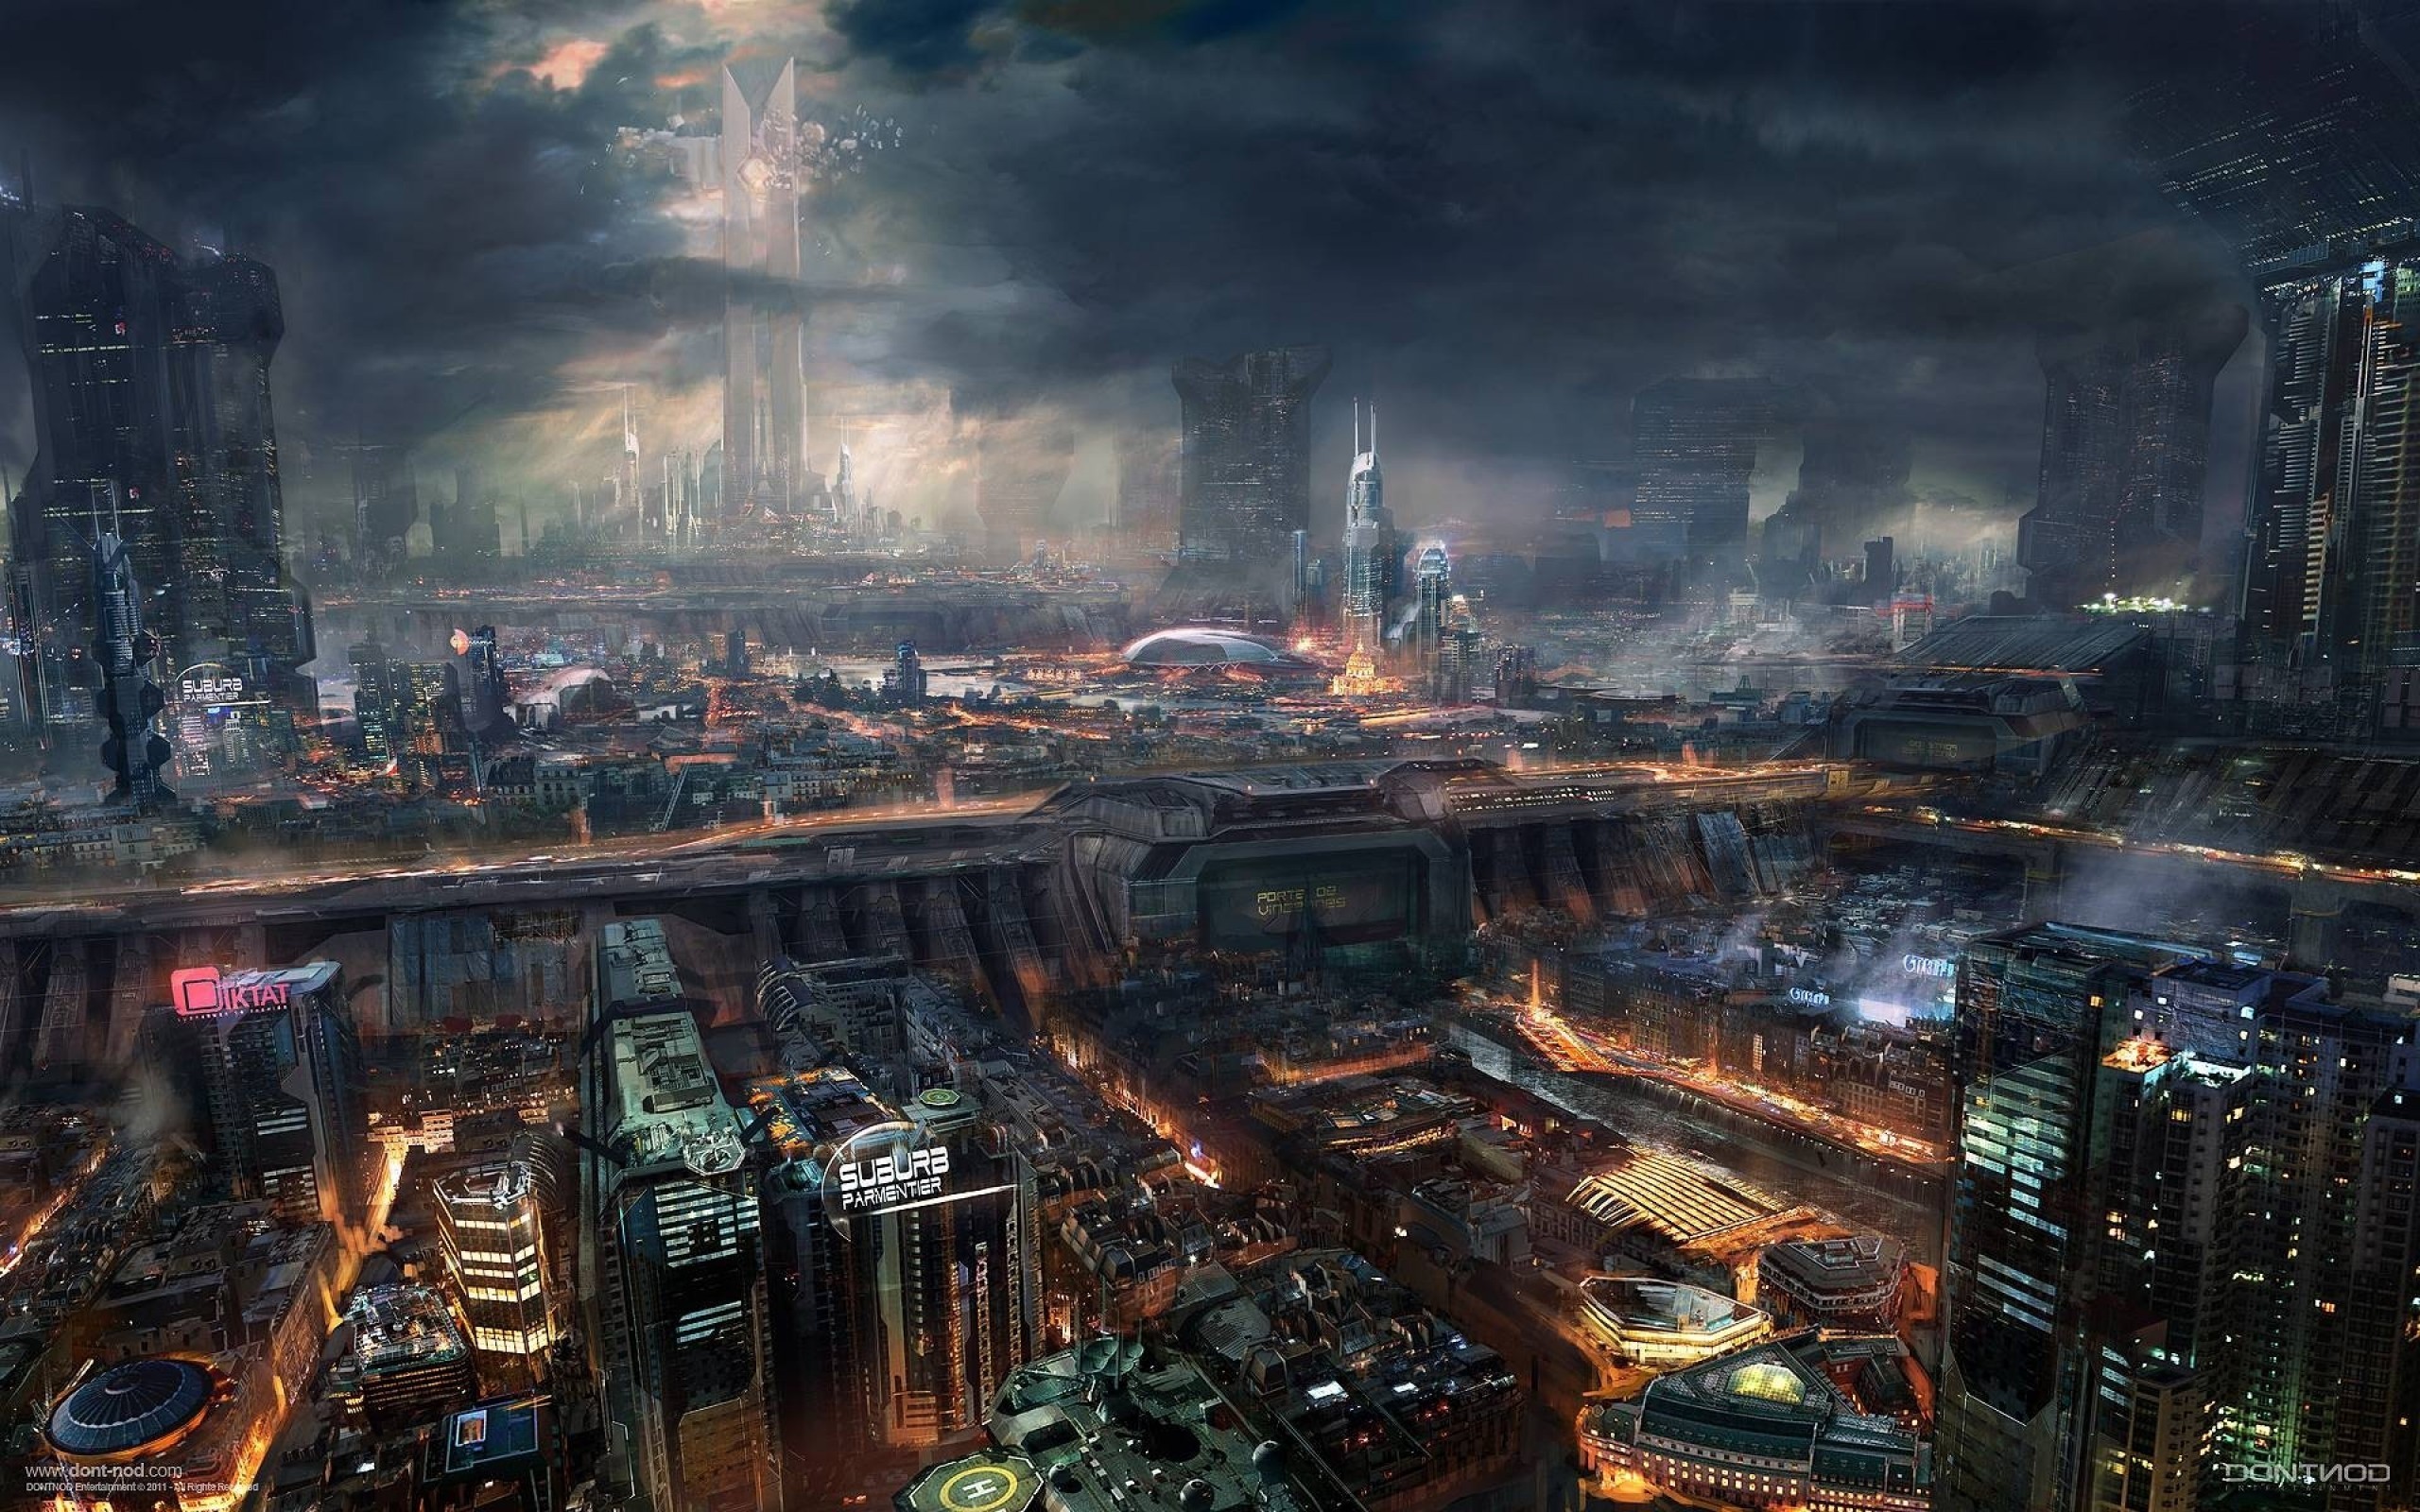 Futuristic City, Cyberpunk, Skyscrapers, Dark, Industrial, - Sci Fi City - HD Wallpaper 